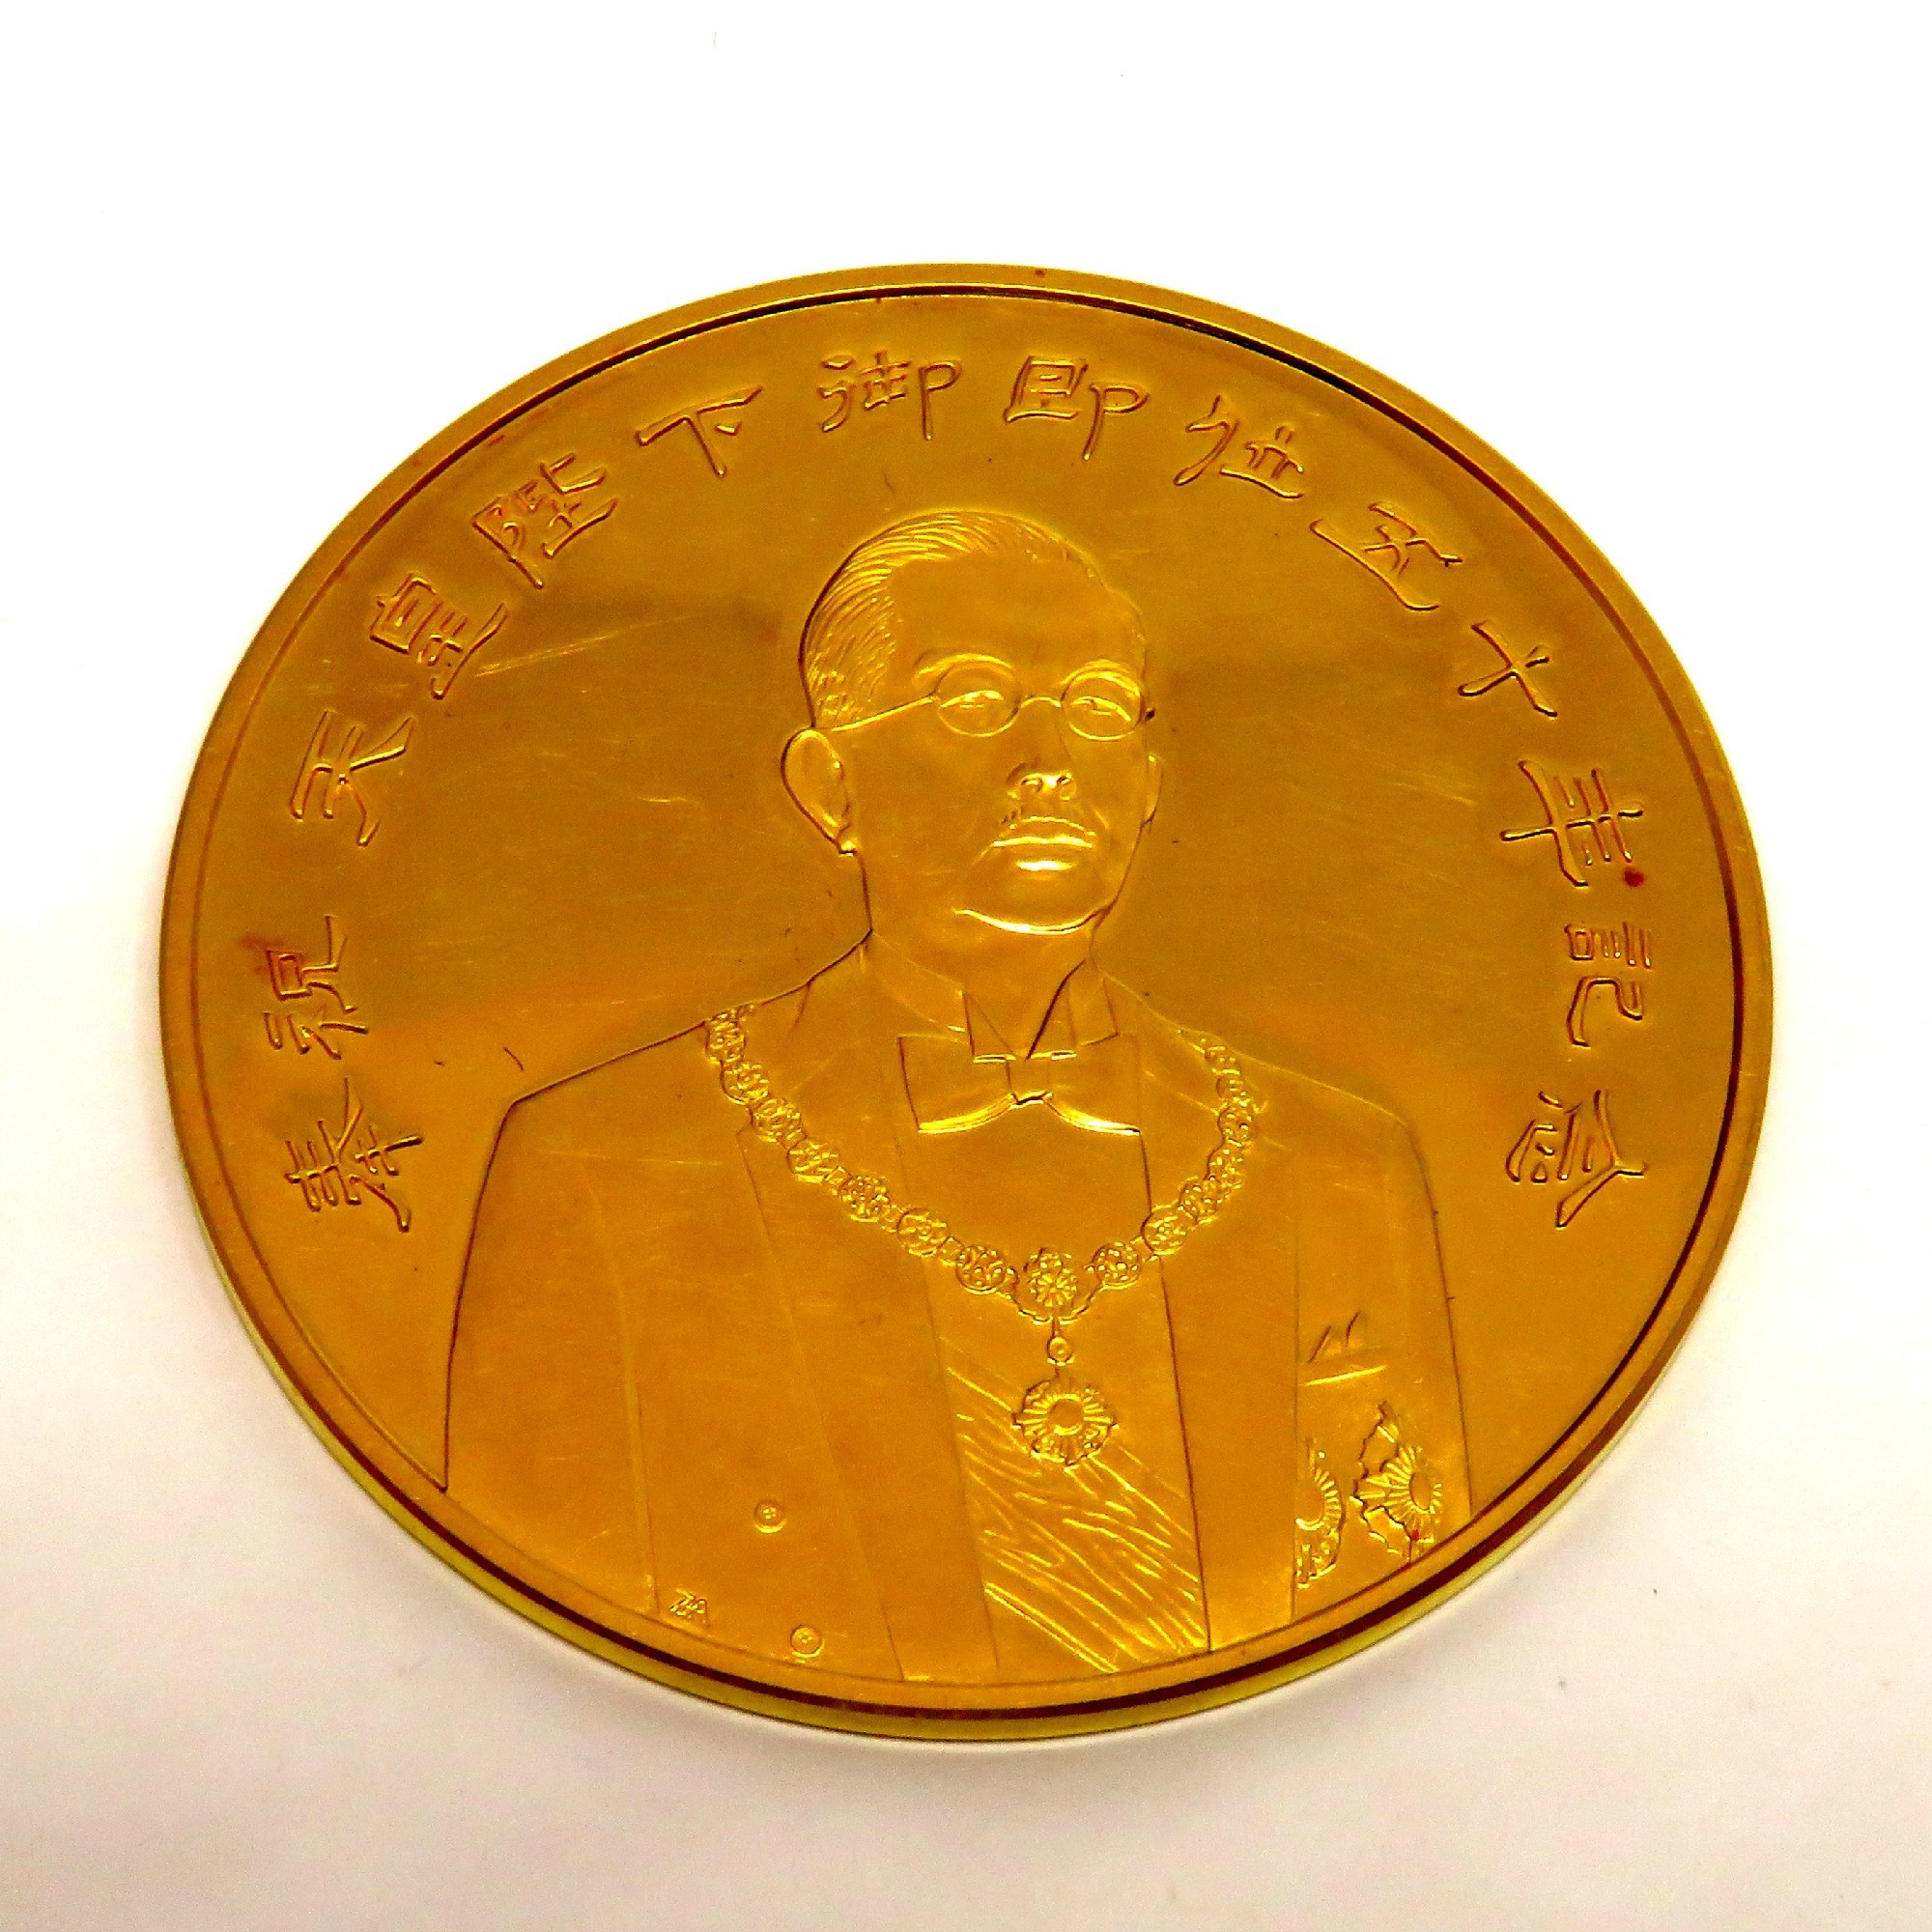 天皇陛下御在位50年記念 昭和51年発行 記念硬貨 100円プルーフ硬貨 